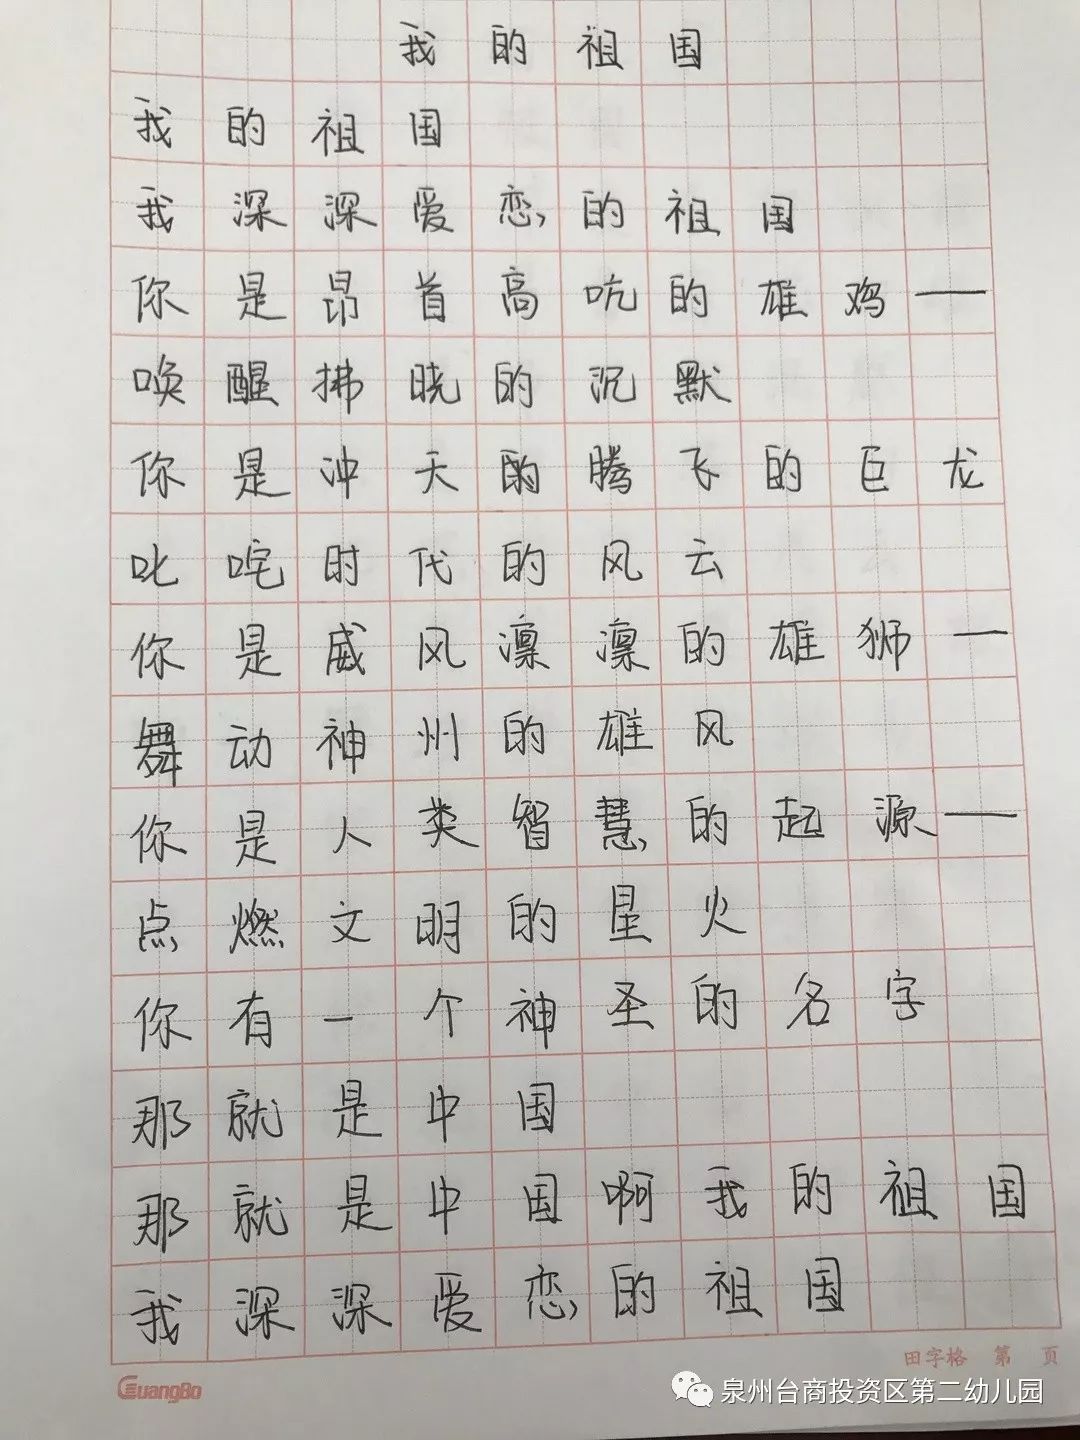 开展书写规范字,铸就中国梦教师硬笔书法比赛活动,通过撰写歌颂祖国